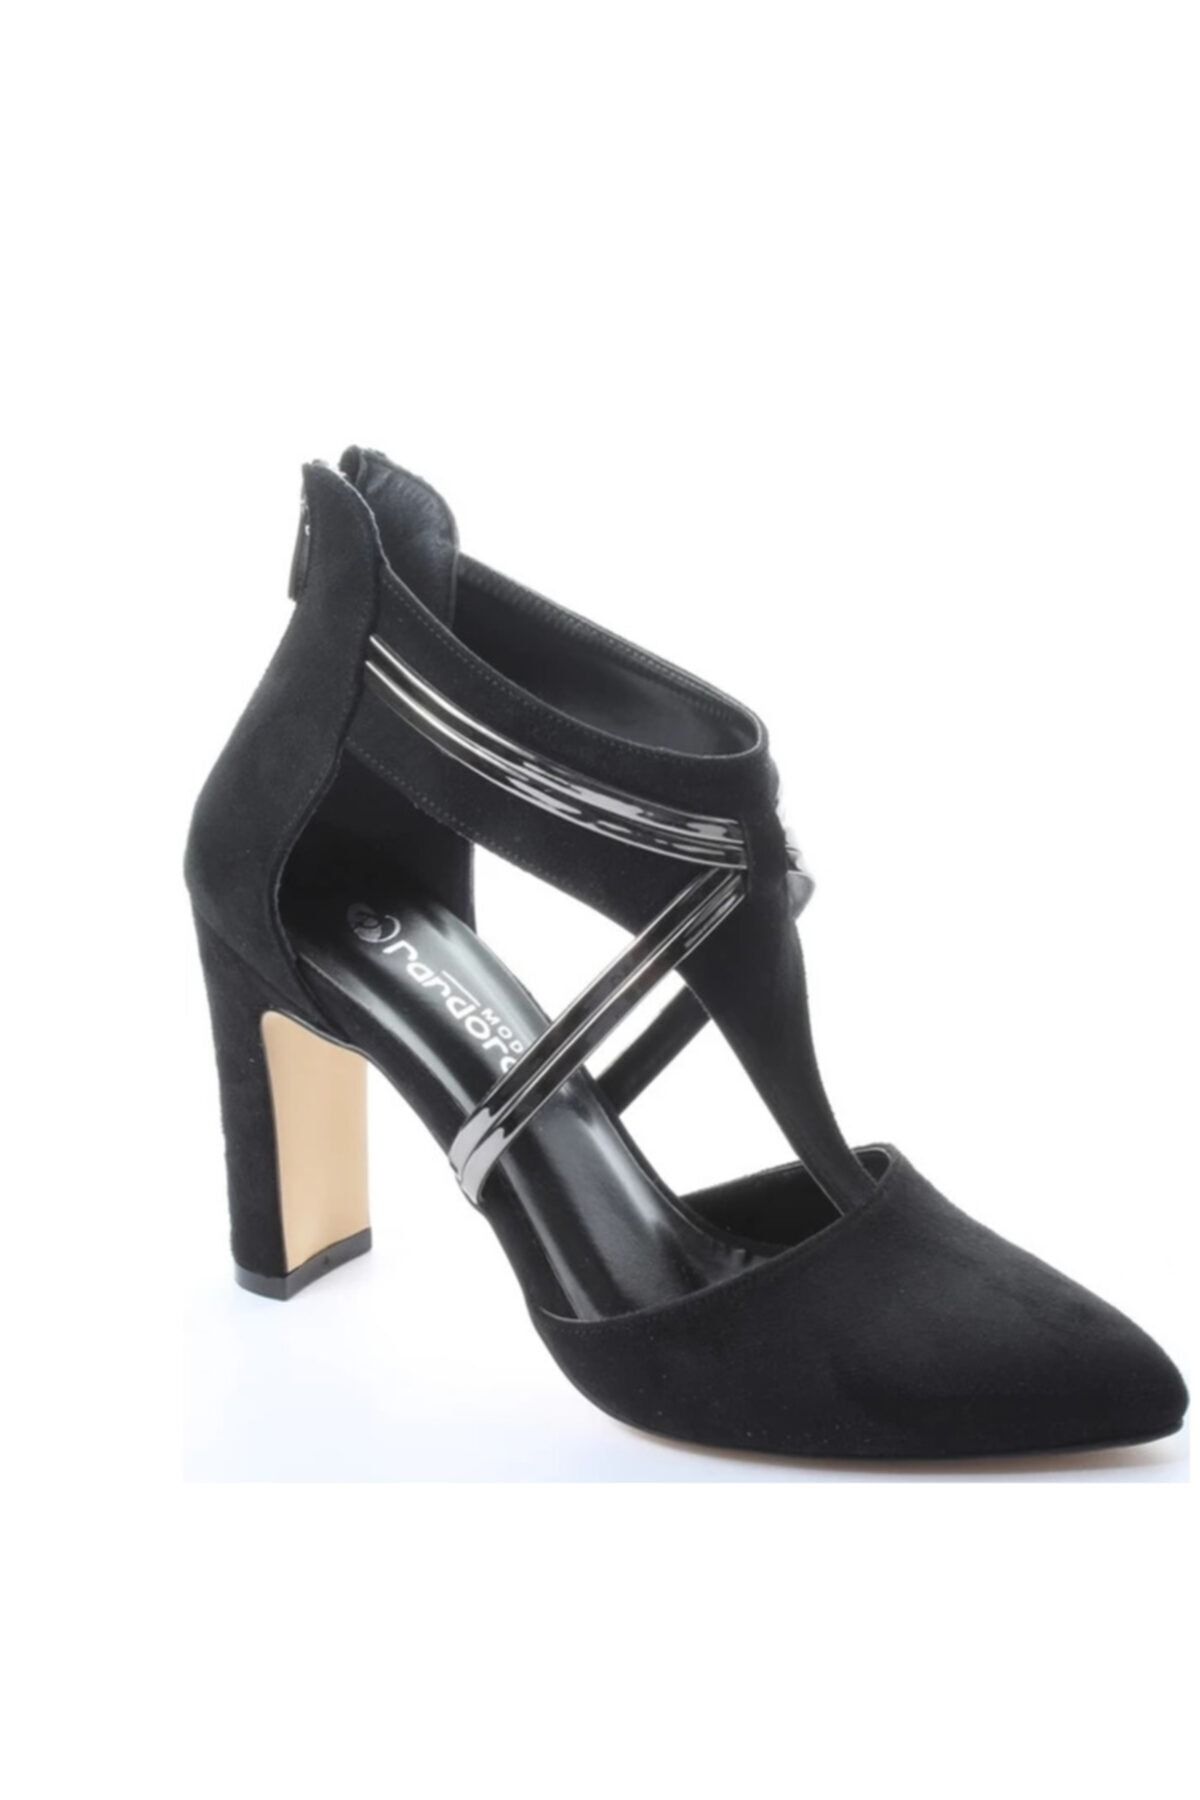 Pandora Kadın Siyah Klasik Günlük Topuklu Ayakkabı 302